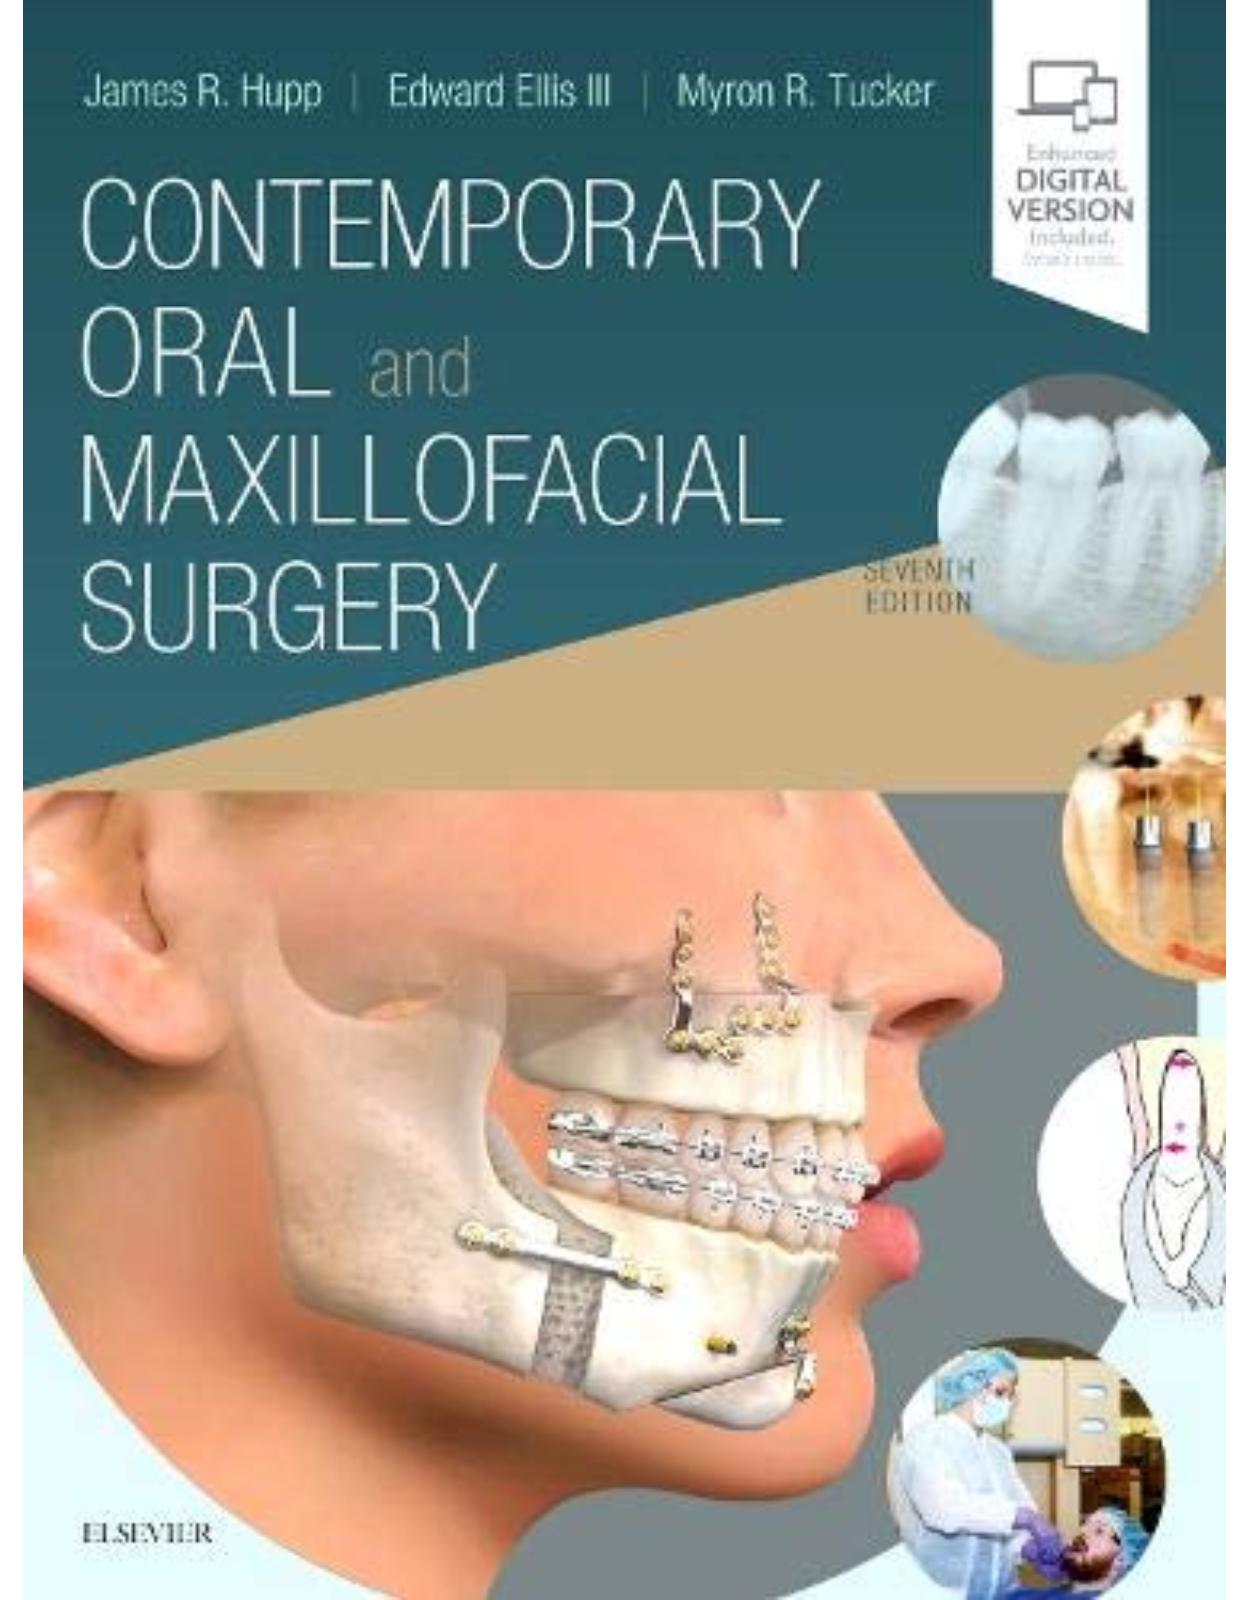 Contemporary Oral and Maxillofacial Surgery, 7e